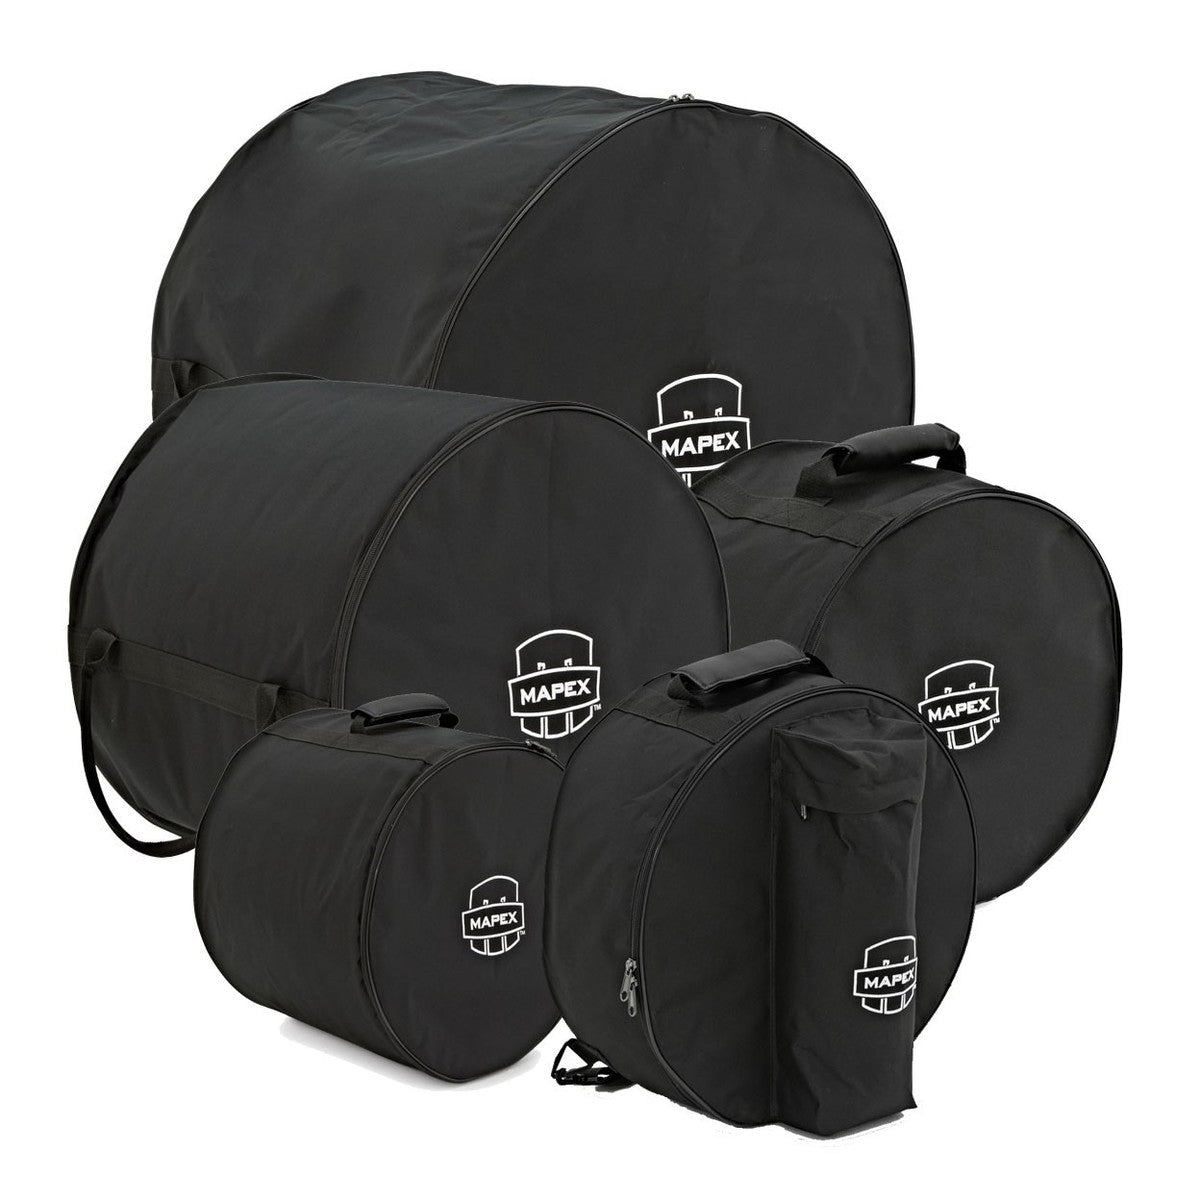 Mapex Drum Bag Set - 22" LA Fusion